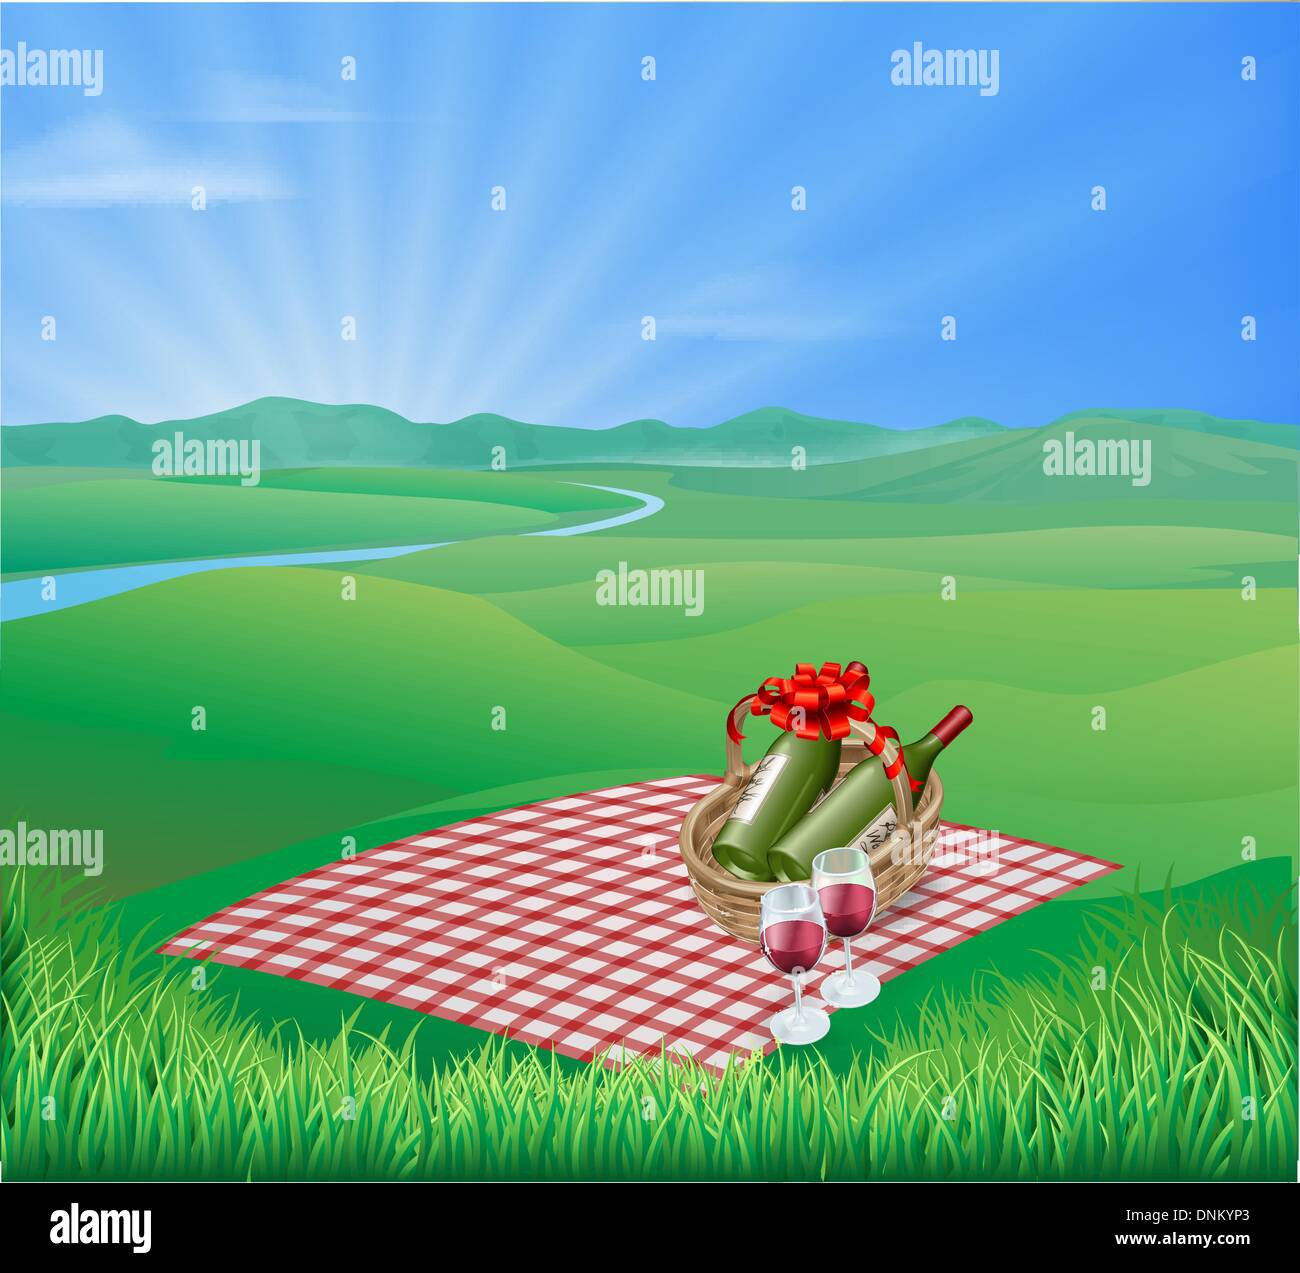 Coperta picnic e vino rosso in un paesaggio naturale. Scena romantica Illustrazione Vettoriale